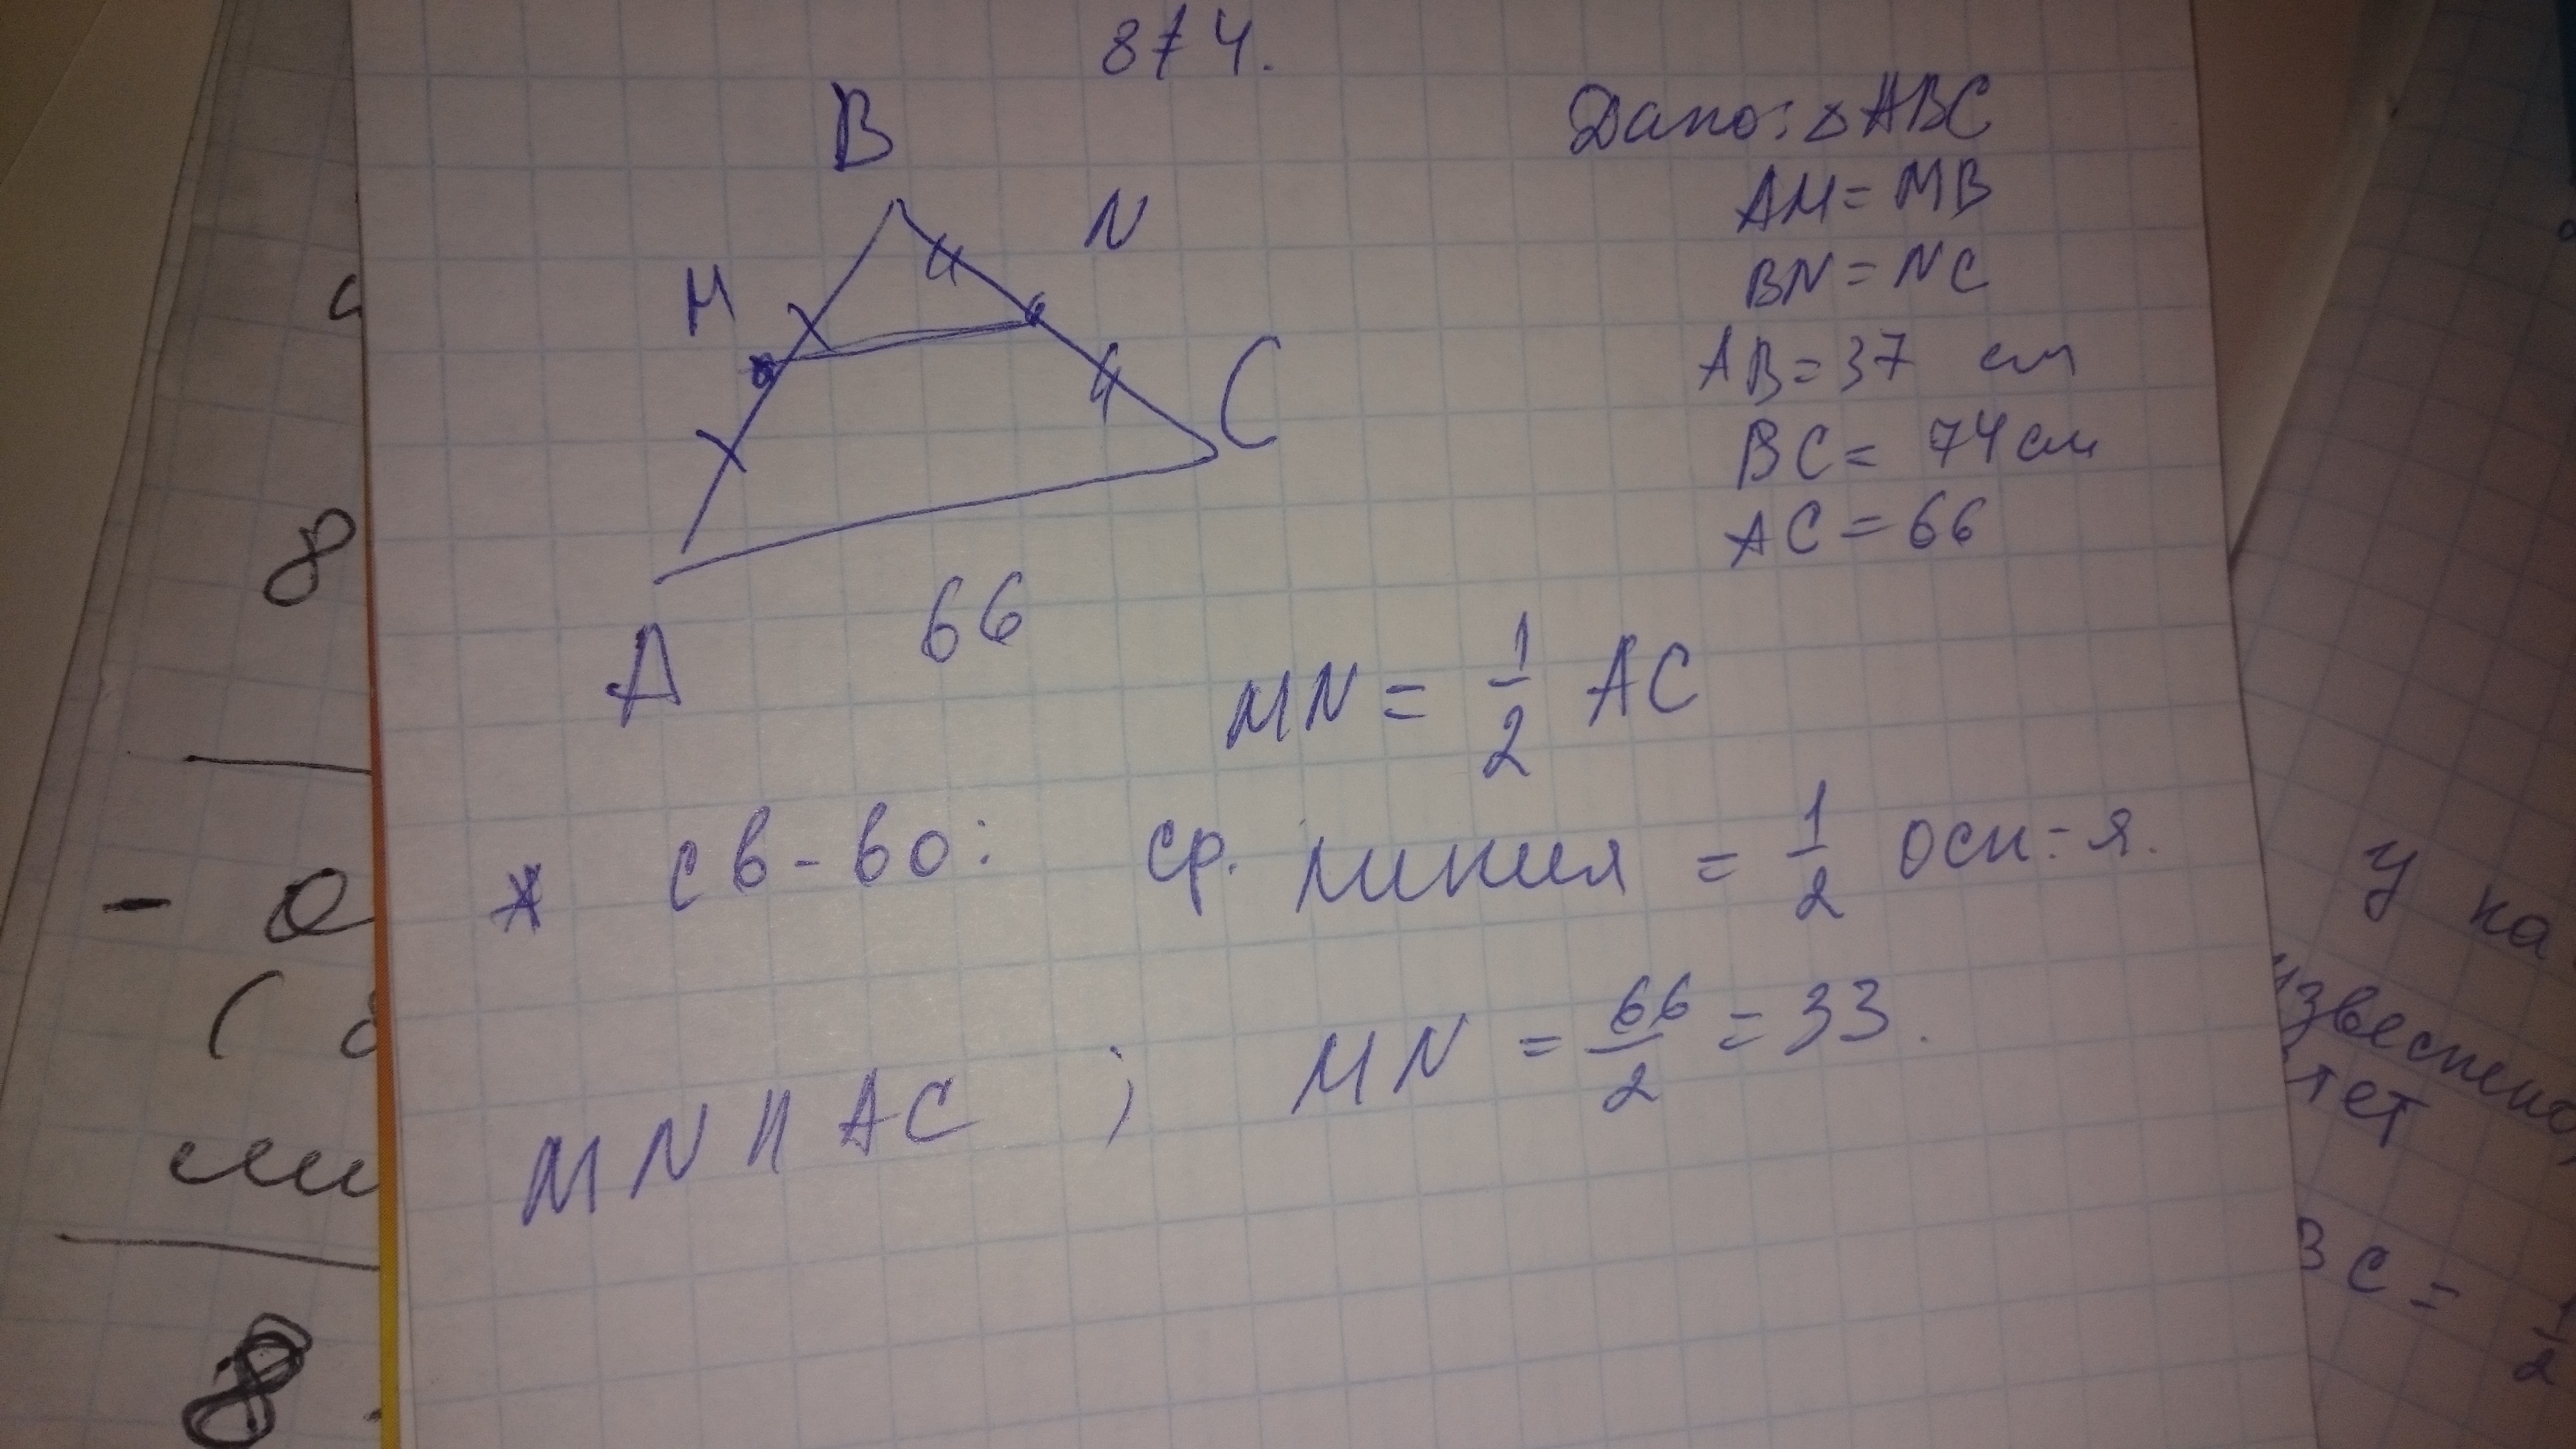 Точки m и n являются серединами сторон ab и BC треугольника ABC сторона ab